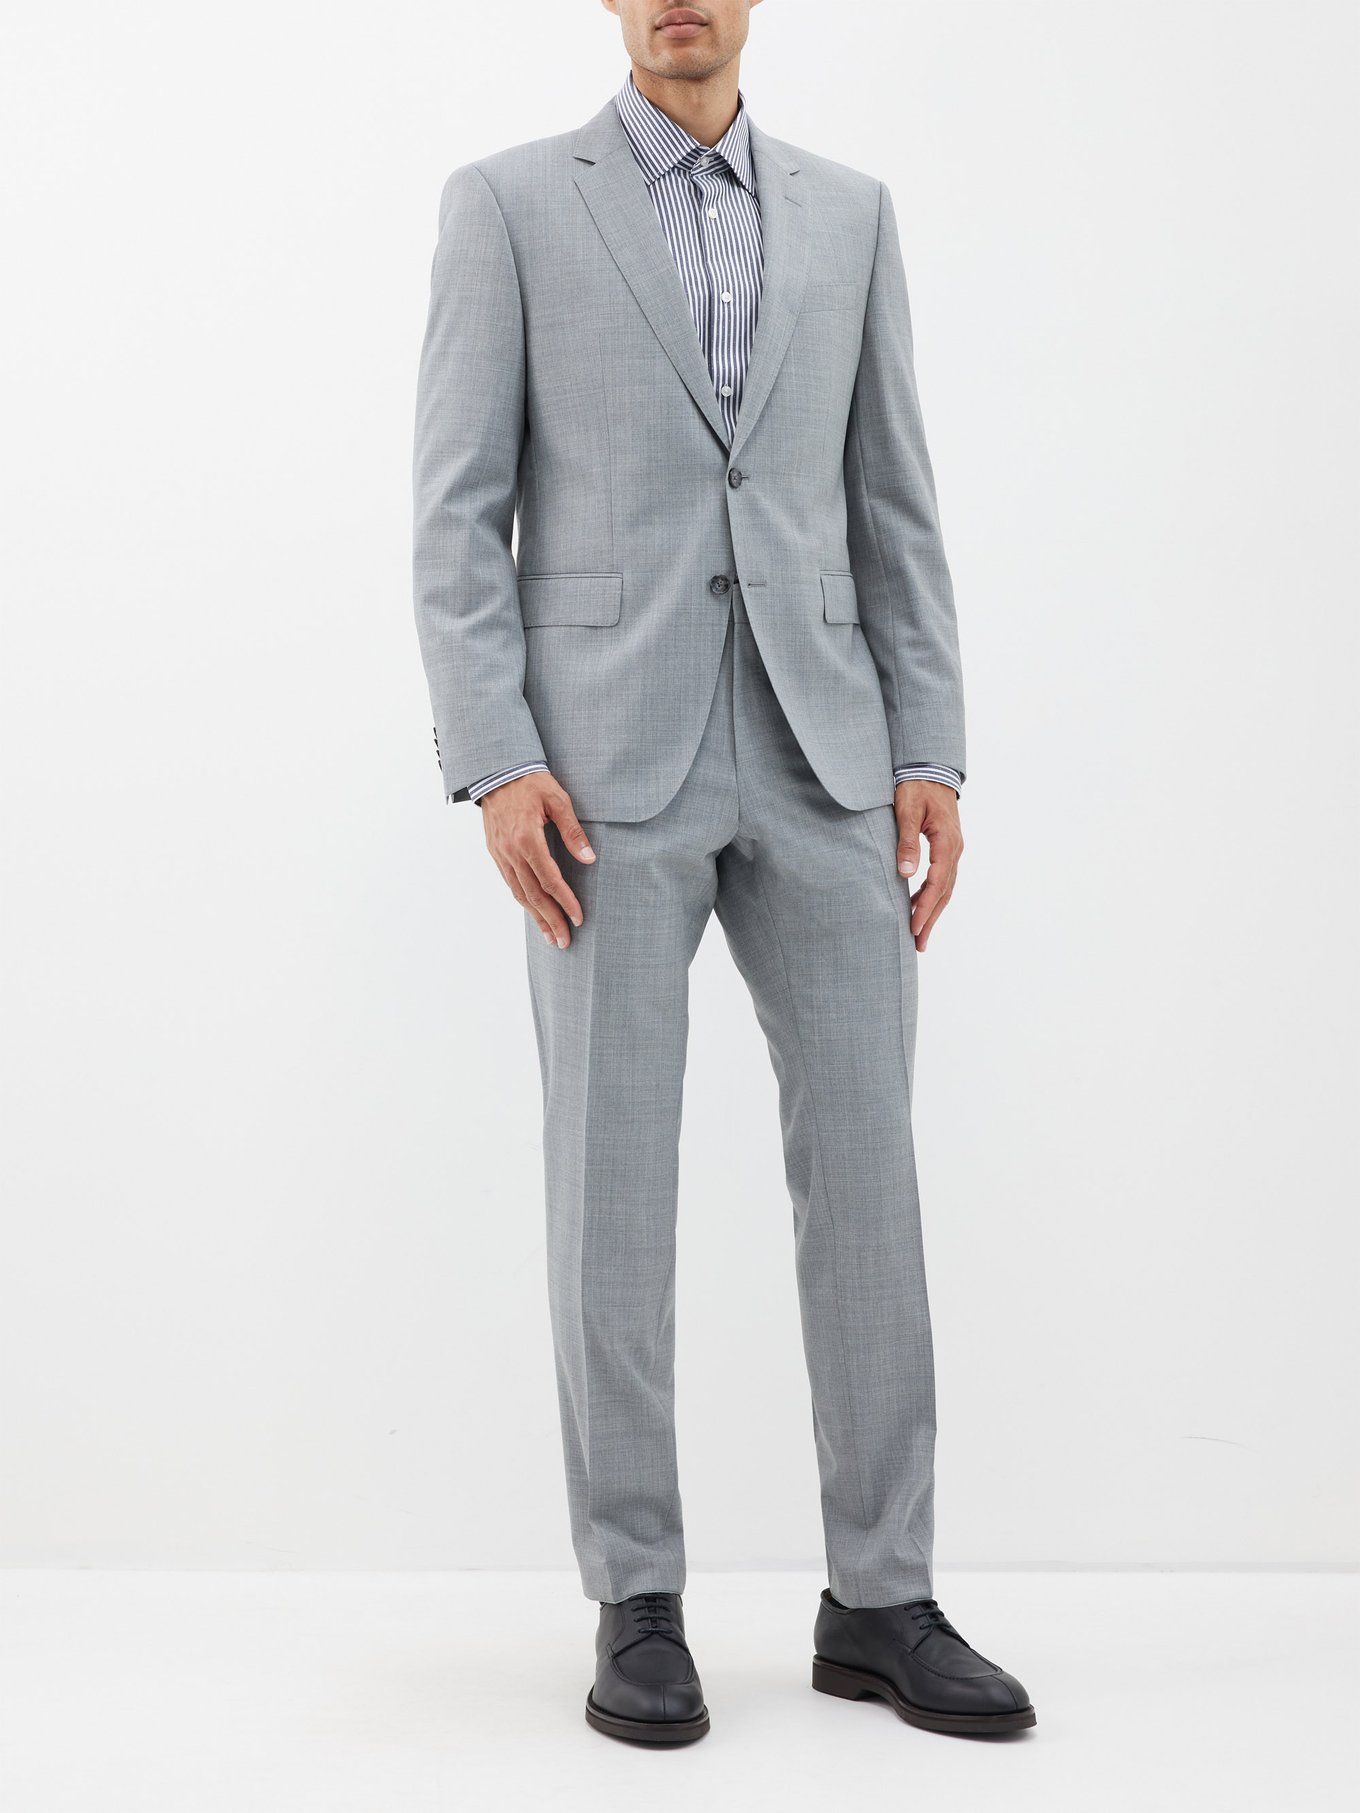 Boss Men's Slim-Fit Double-Breasted Suit in Virgin Wool - Dark Blue - Size 44